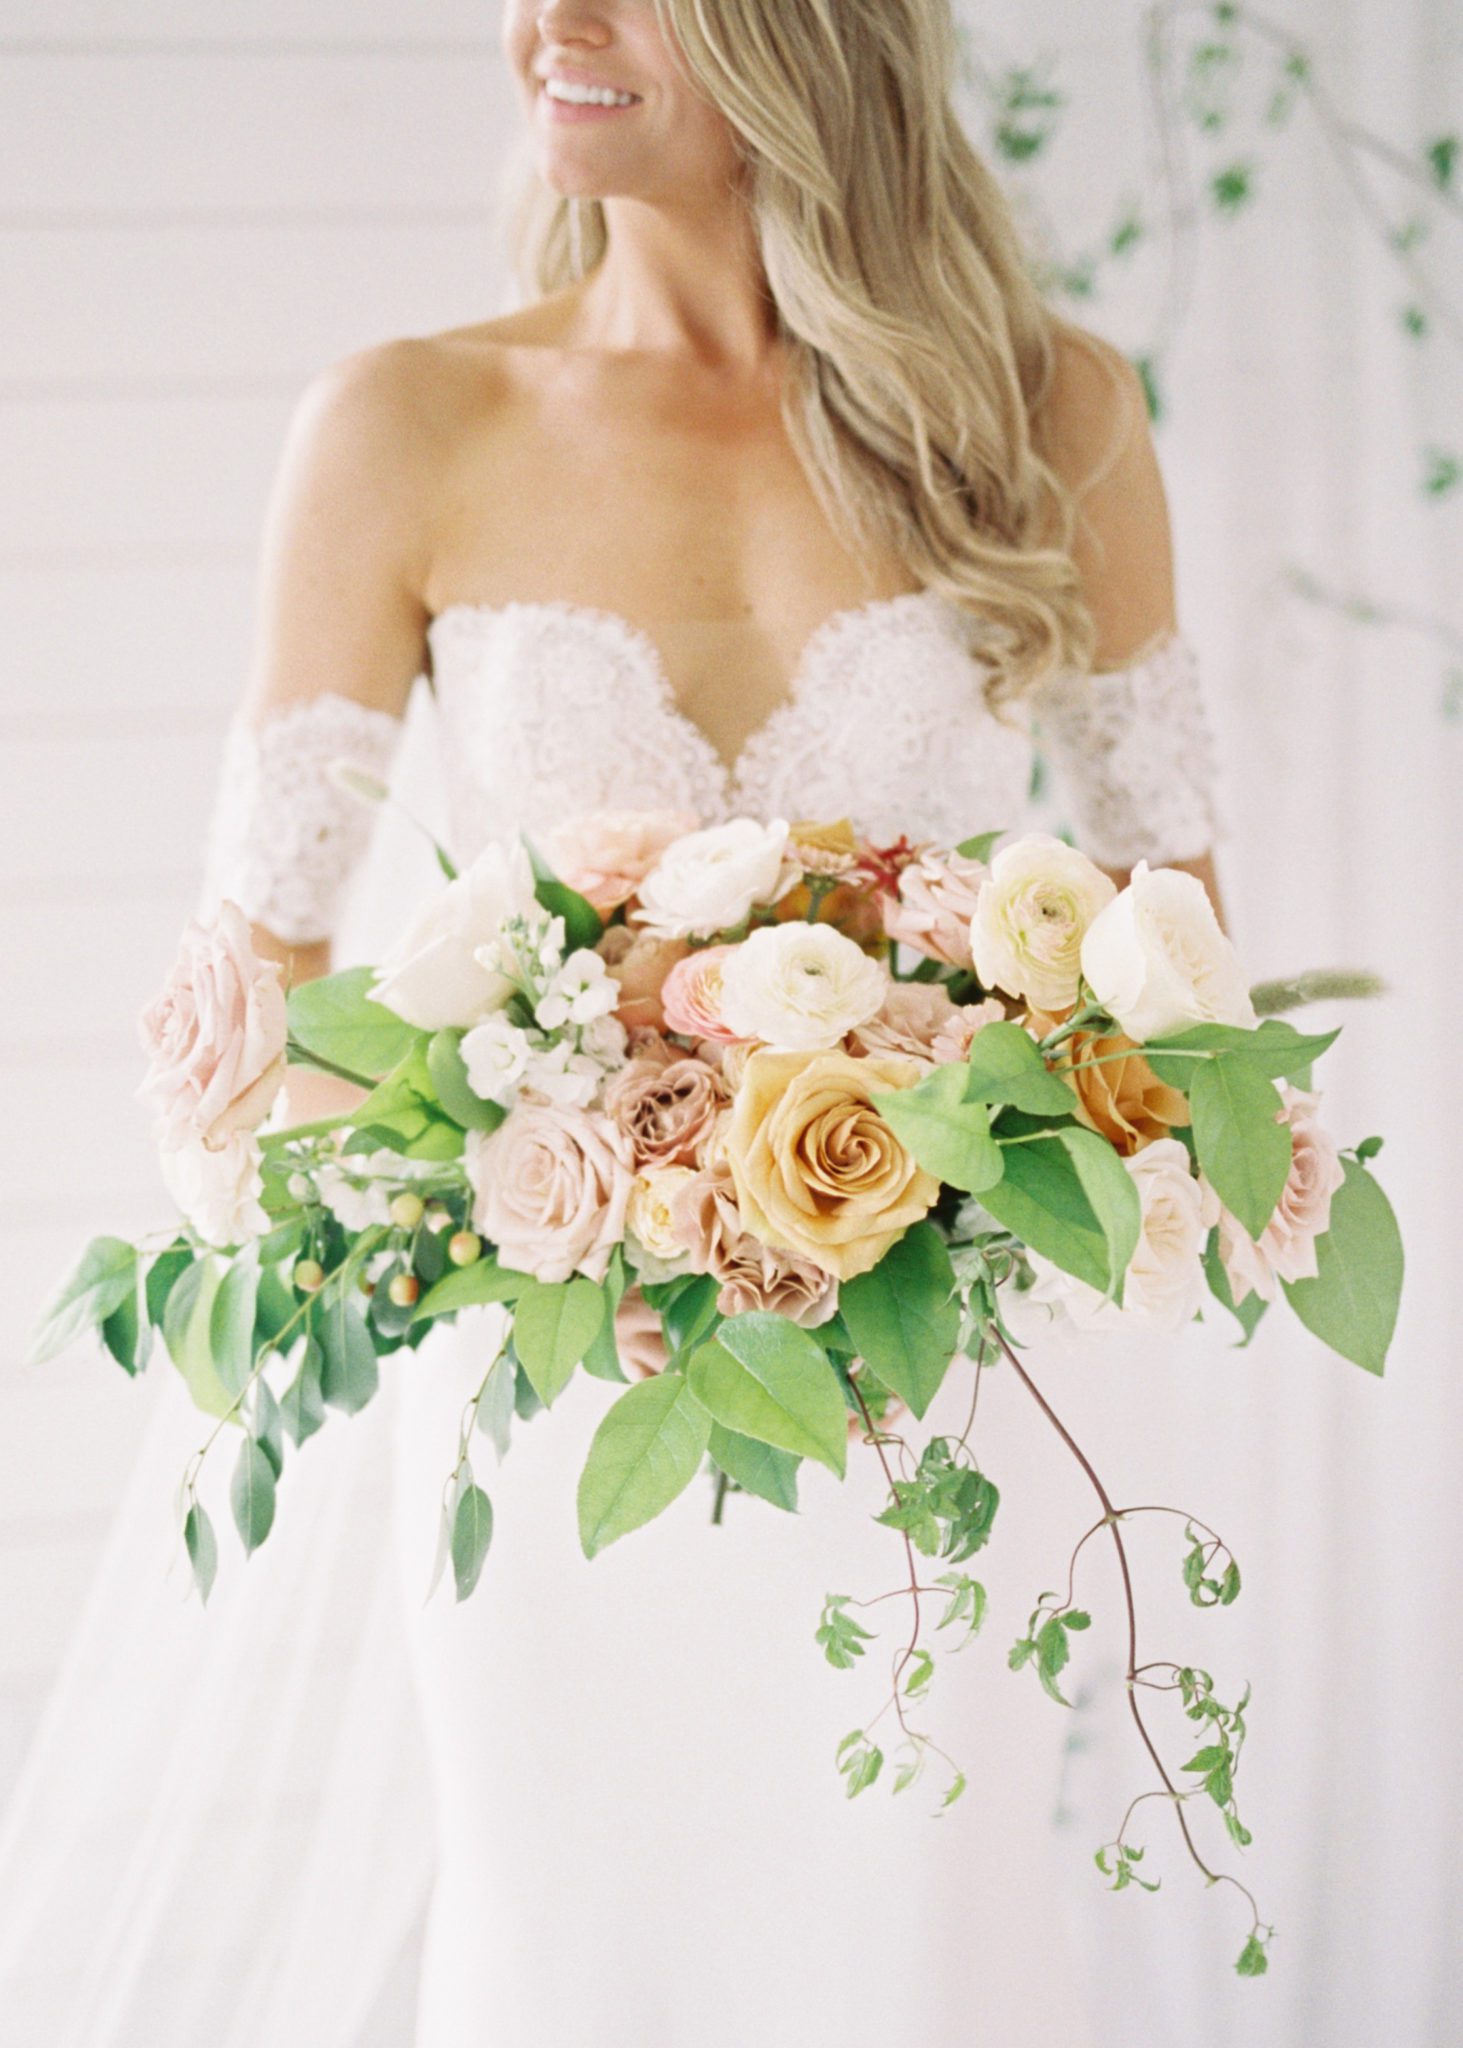 Romantic bridal bouquet inspiration